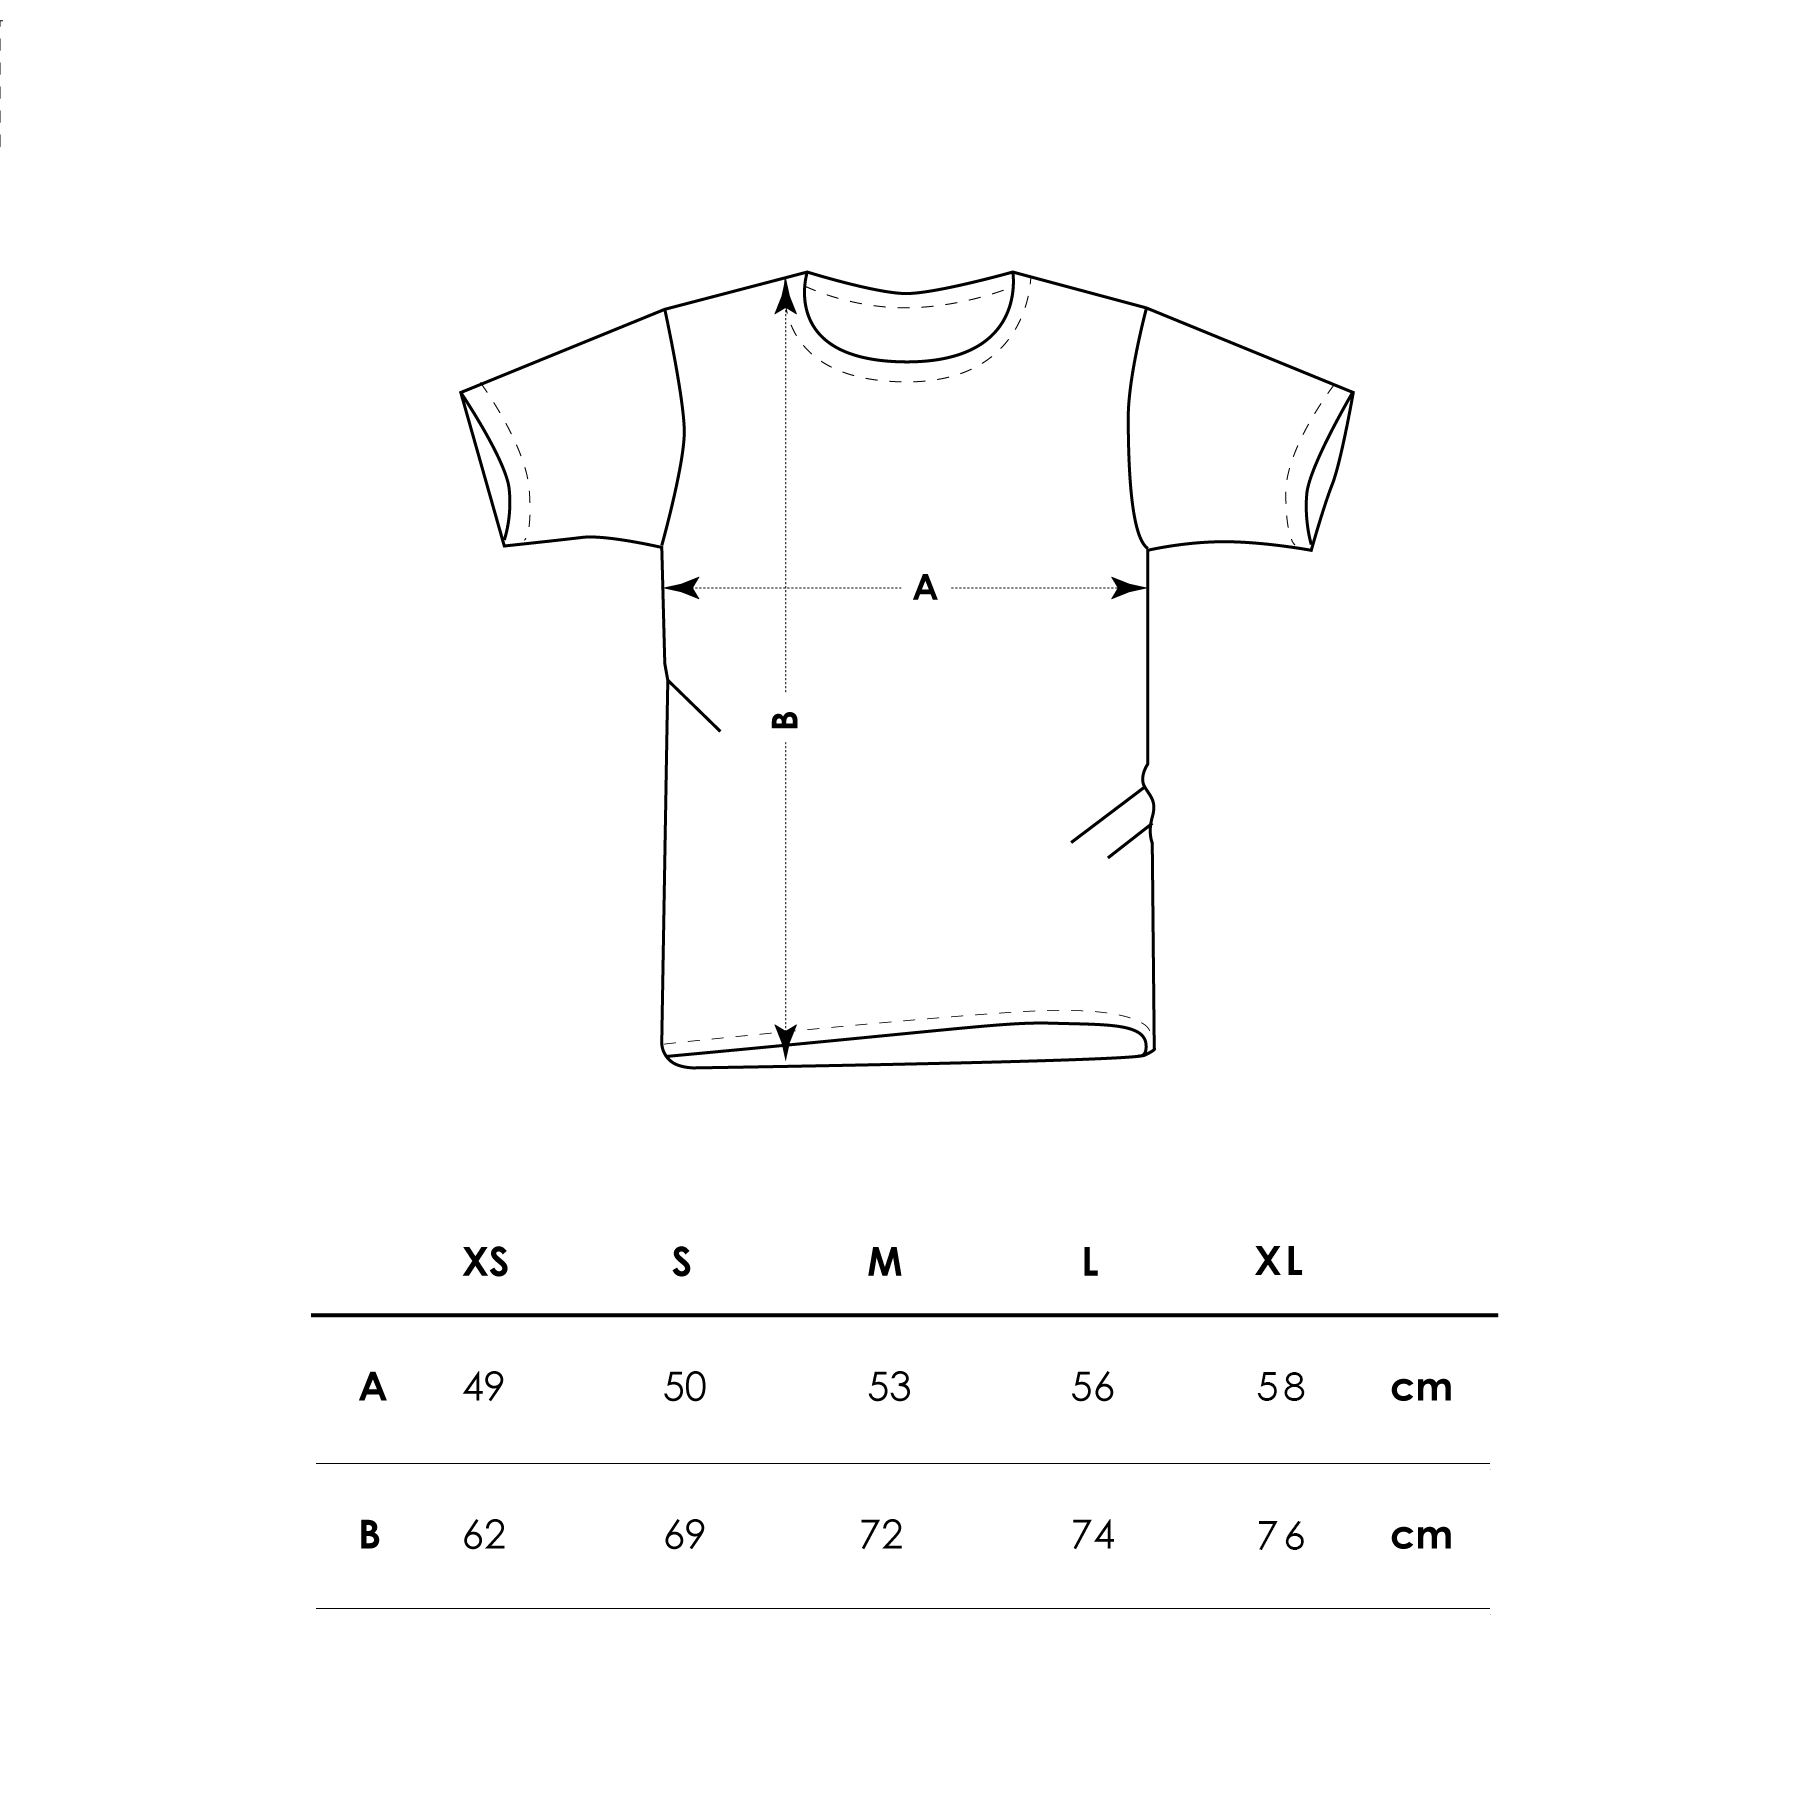 SUI GENERIS / t-shirt ricamata